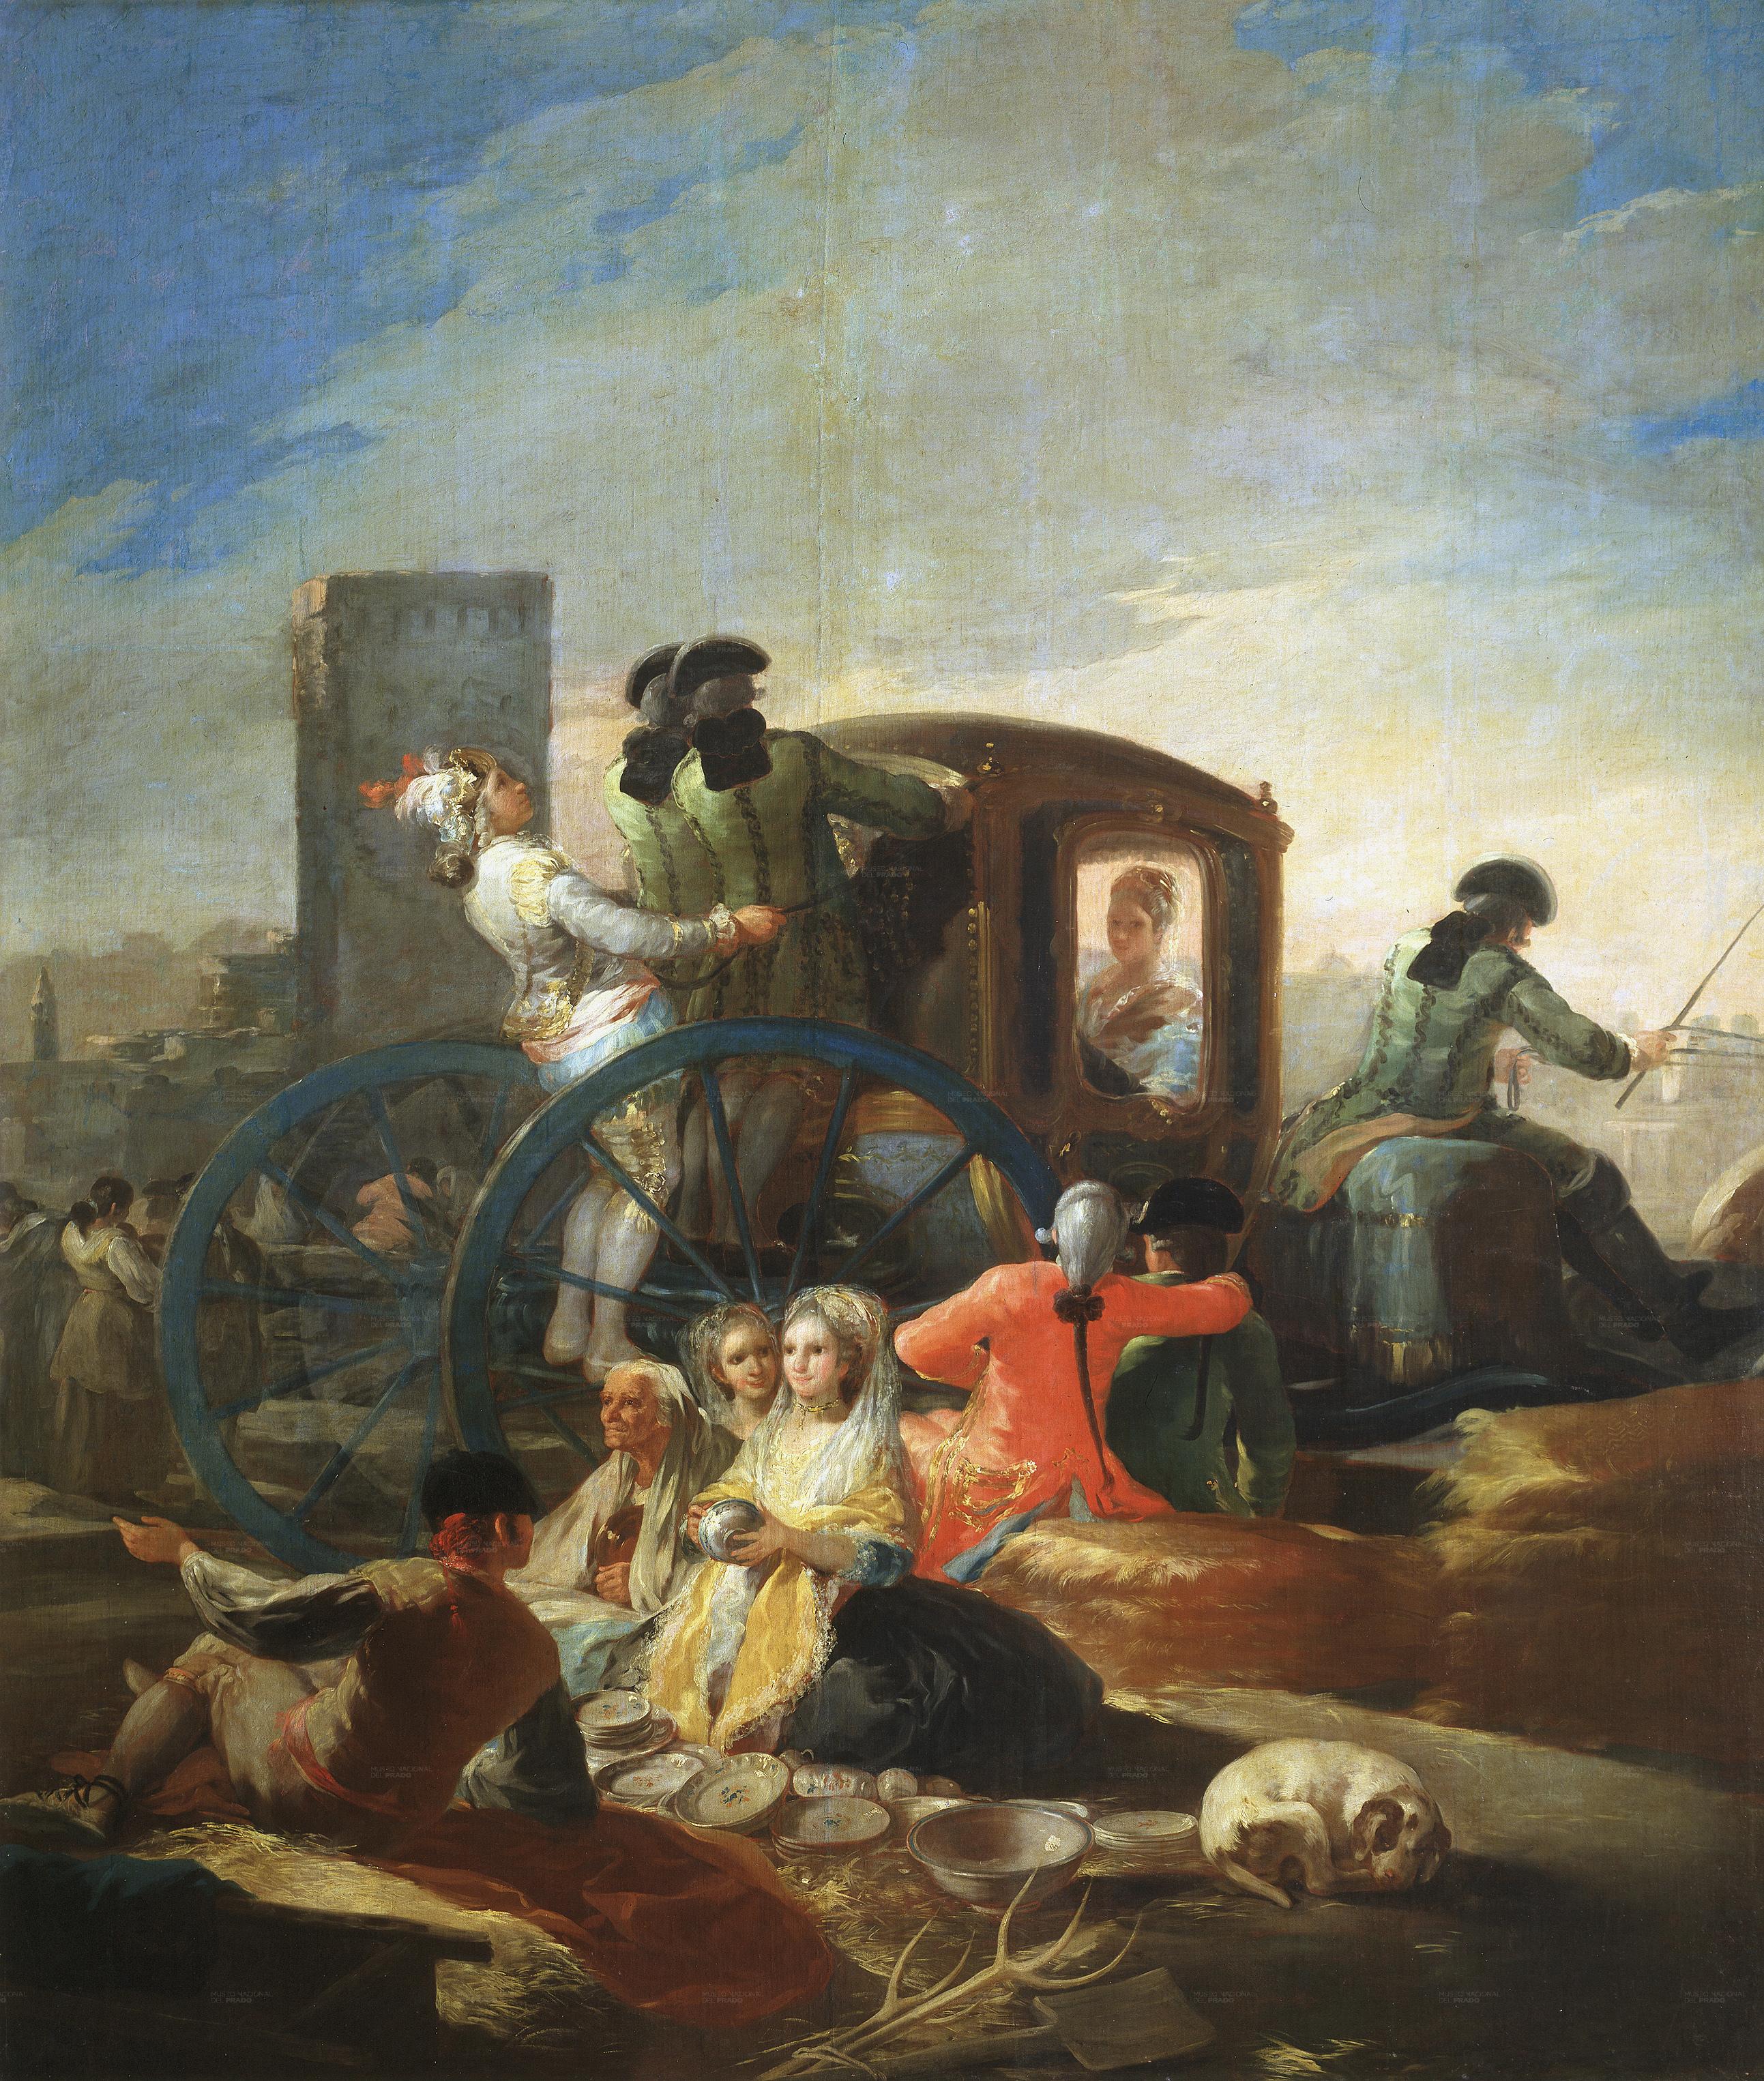 The Crockery Vendor (1779).